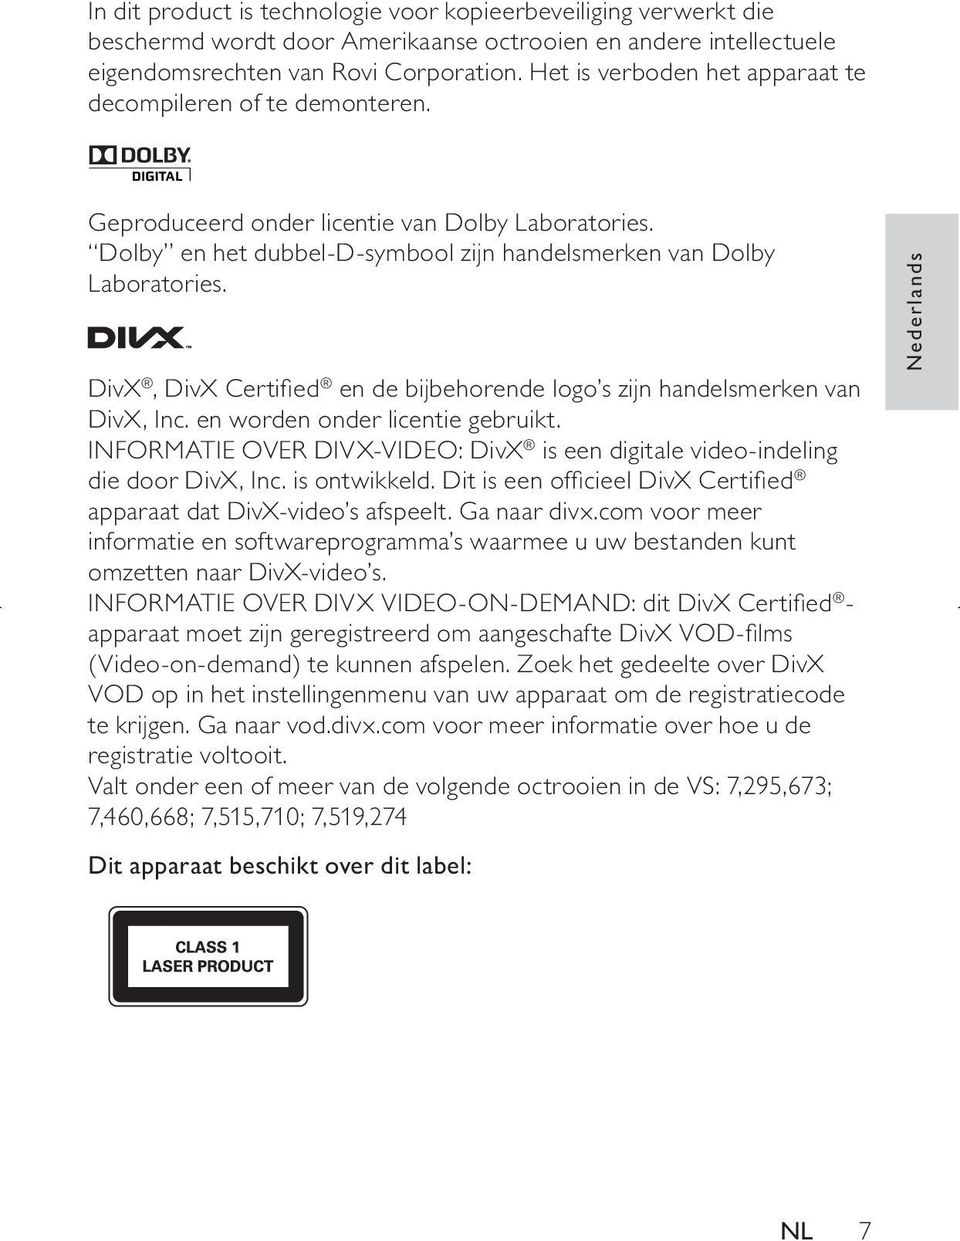 DivX, DivX Certified en de bijbehorende logo s zijn handelsmerken van DivX, Inc. en worden onder licentie gebruikt. INFORMATIE OVER DIVX-VIDEO: DivX is een digitale video-indeling die door DivX, Inc.